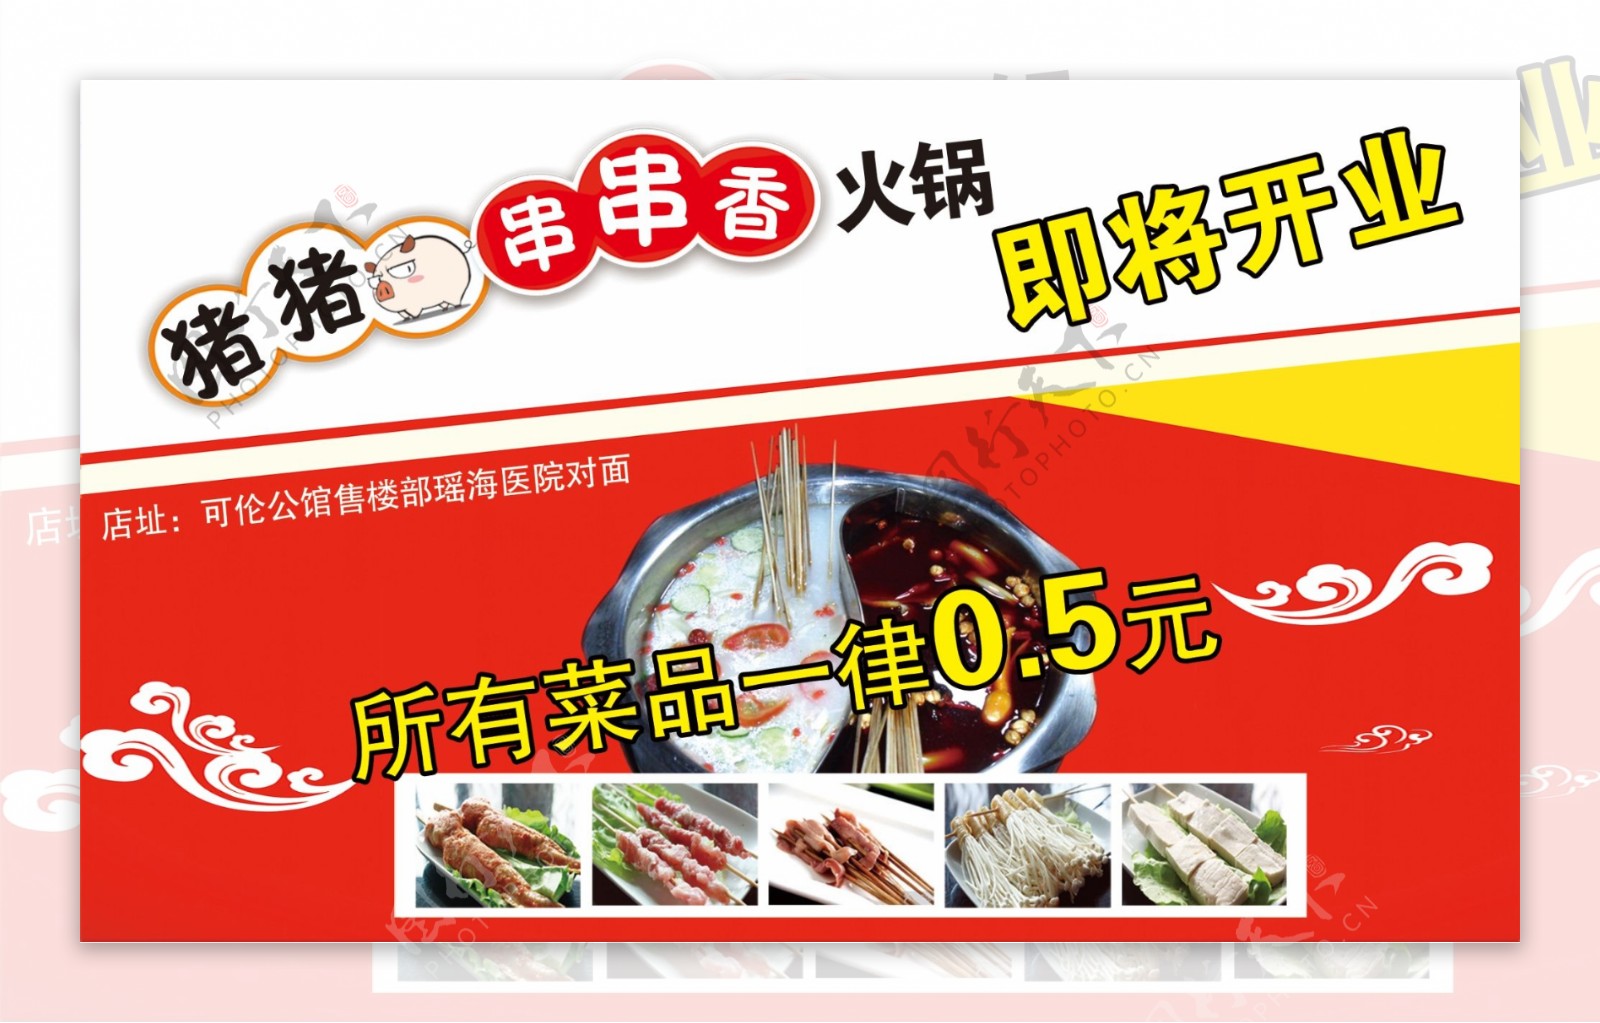 猪猪串串香涮锅广告海报开业活动烫菜